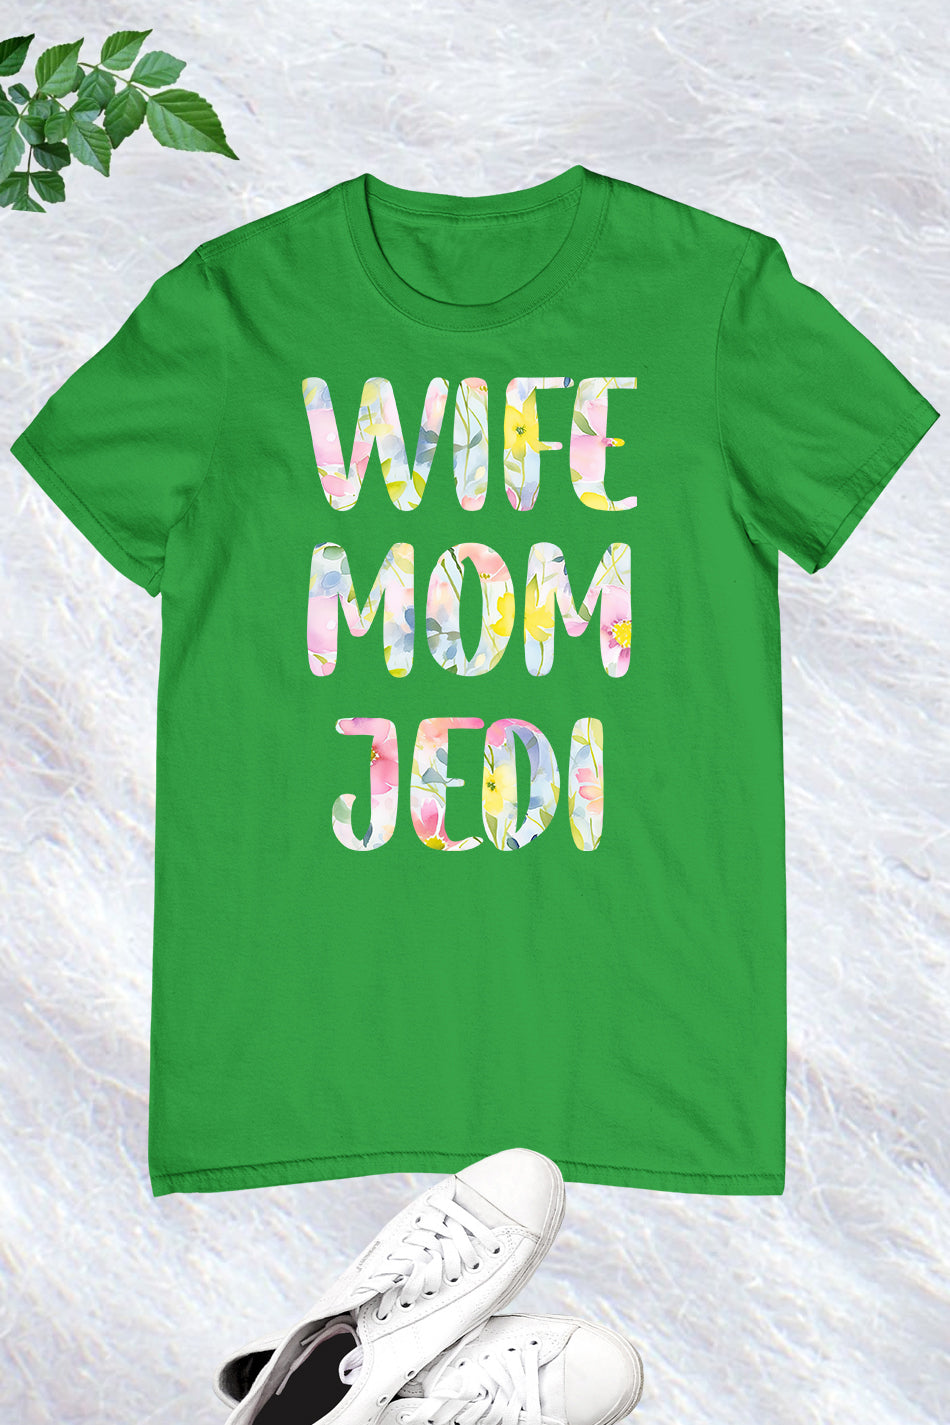 Wife Mom jedi Shirt